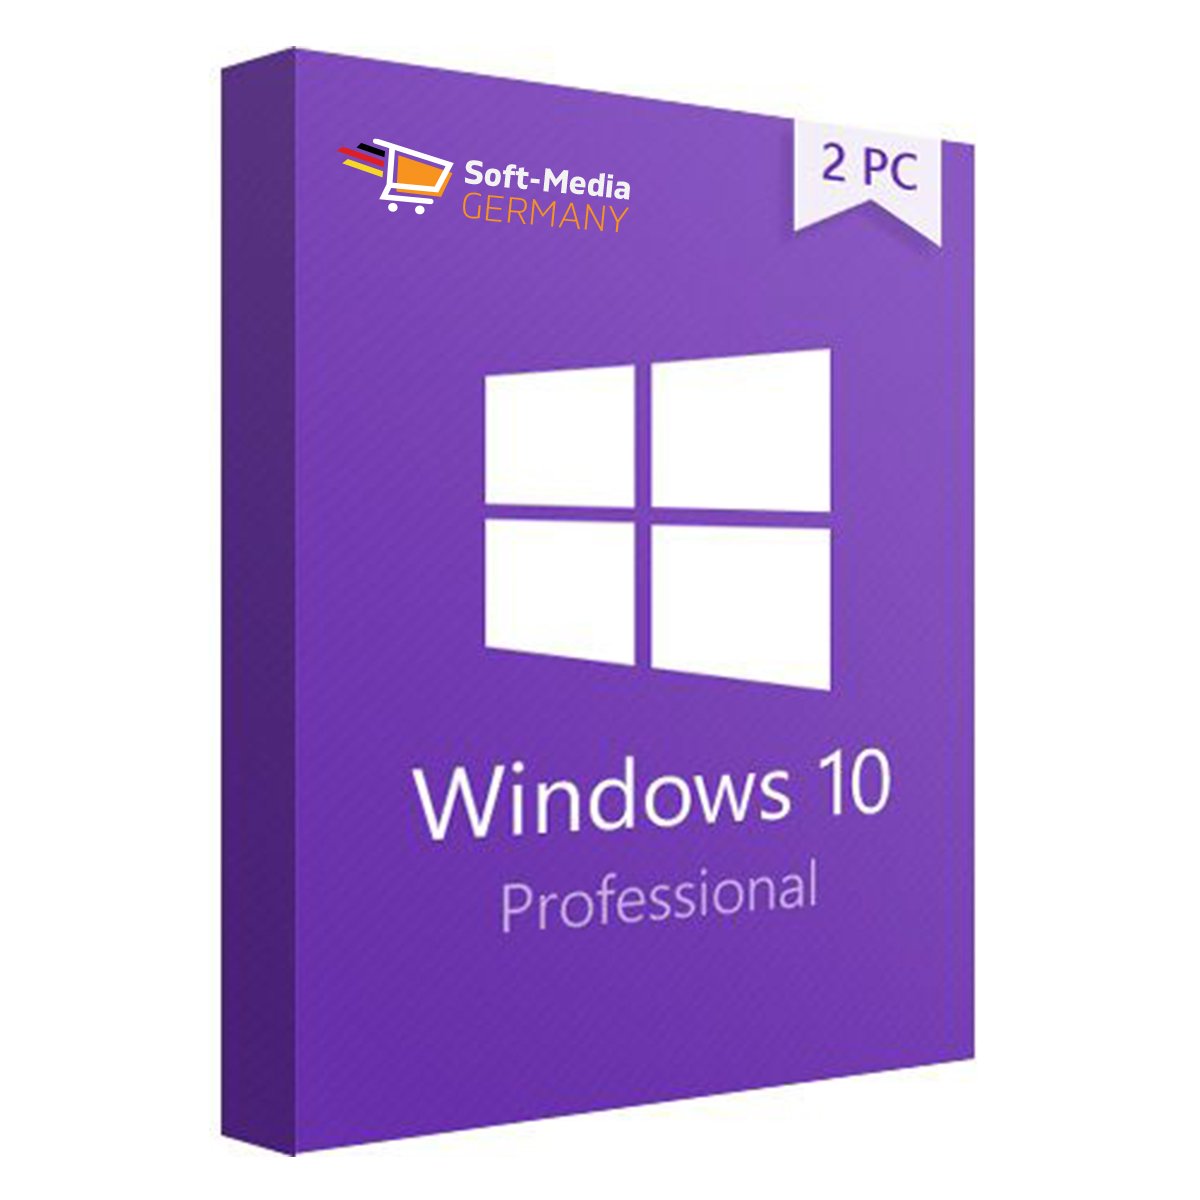 Windows 10 Pro 2pc Gunstig Online Kaufen Jetzt 70 Rabatt Sichern